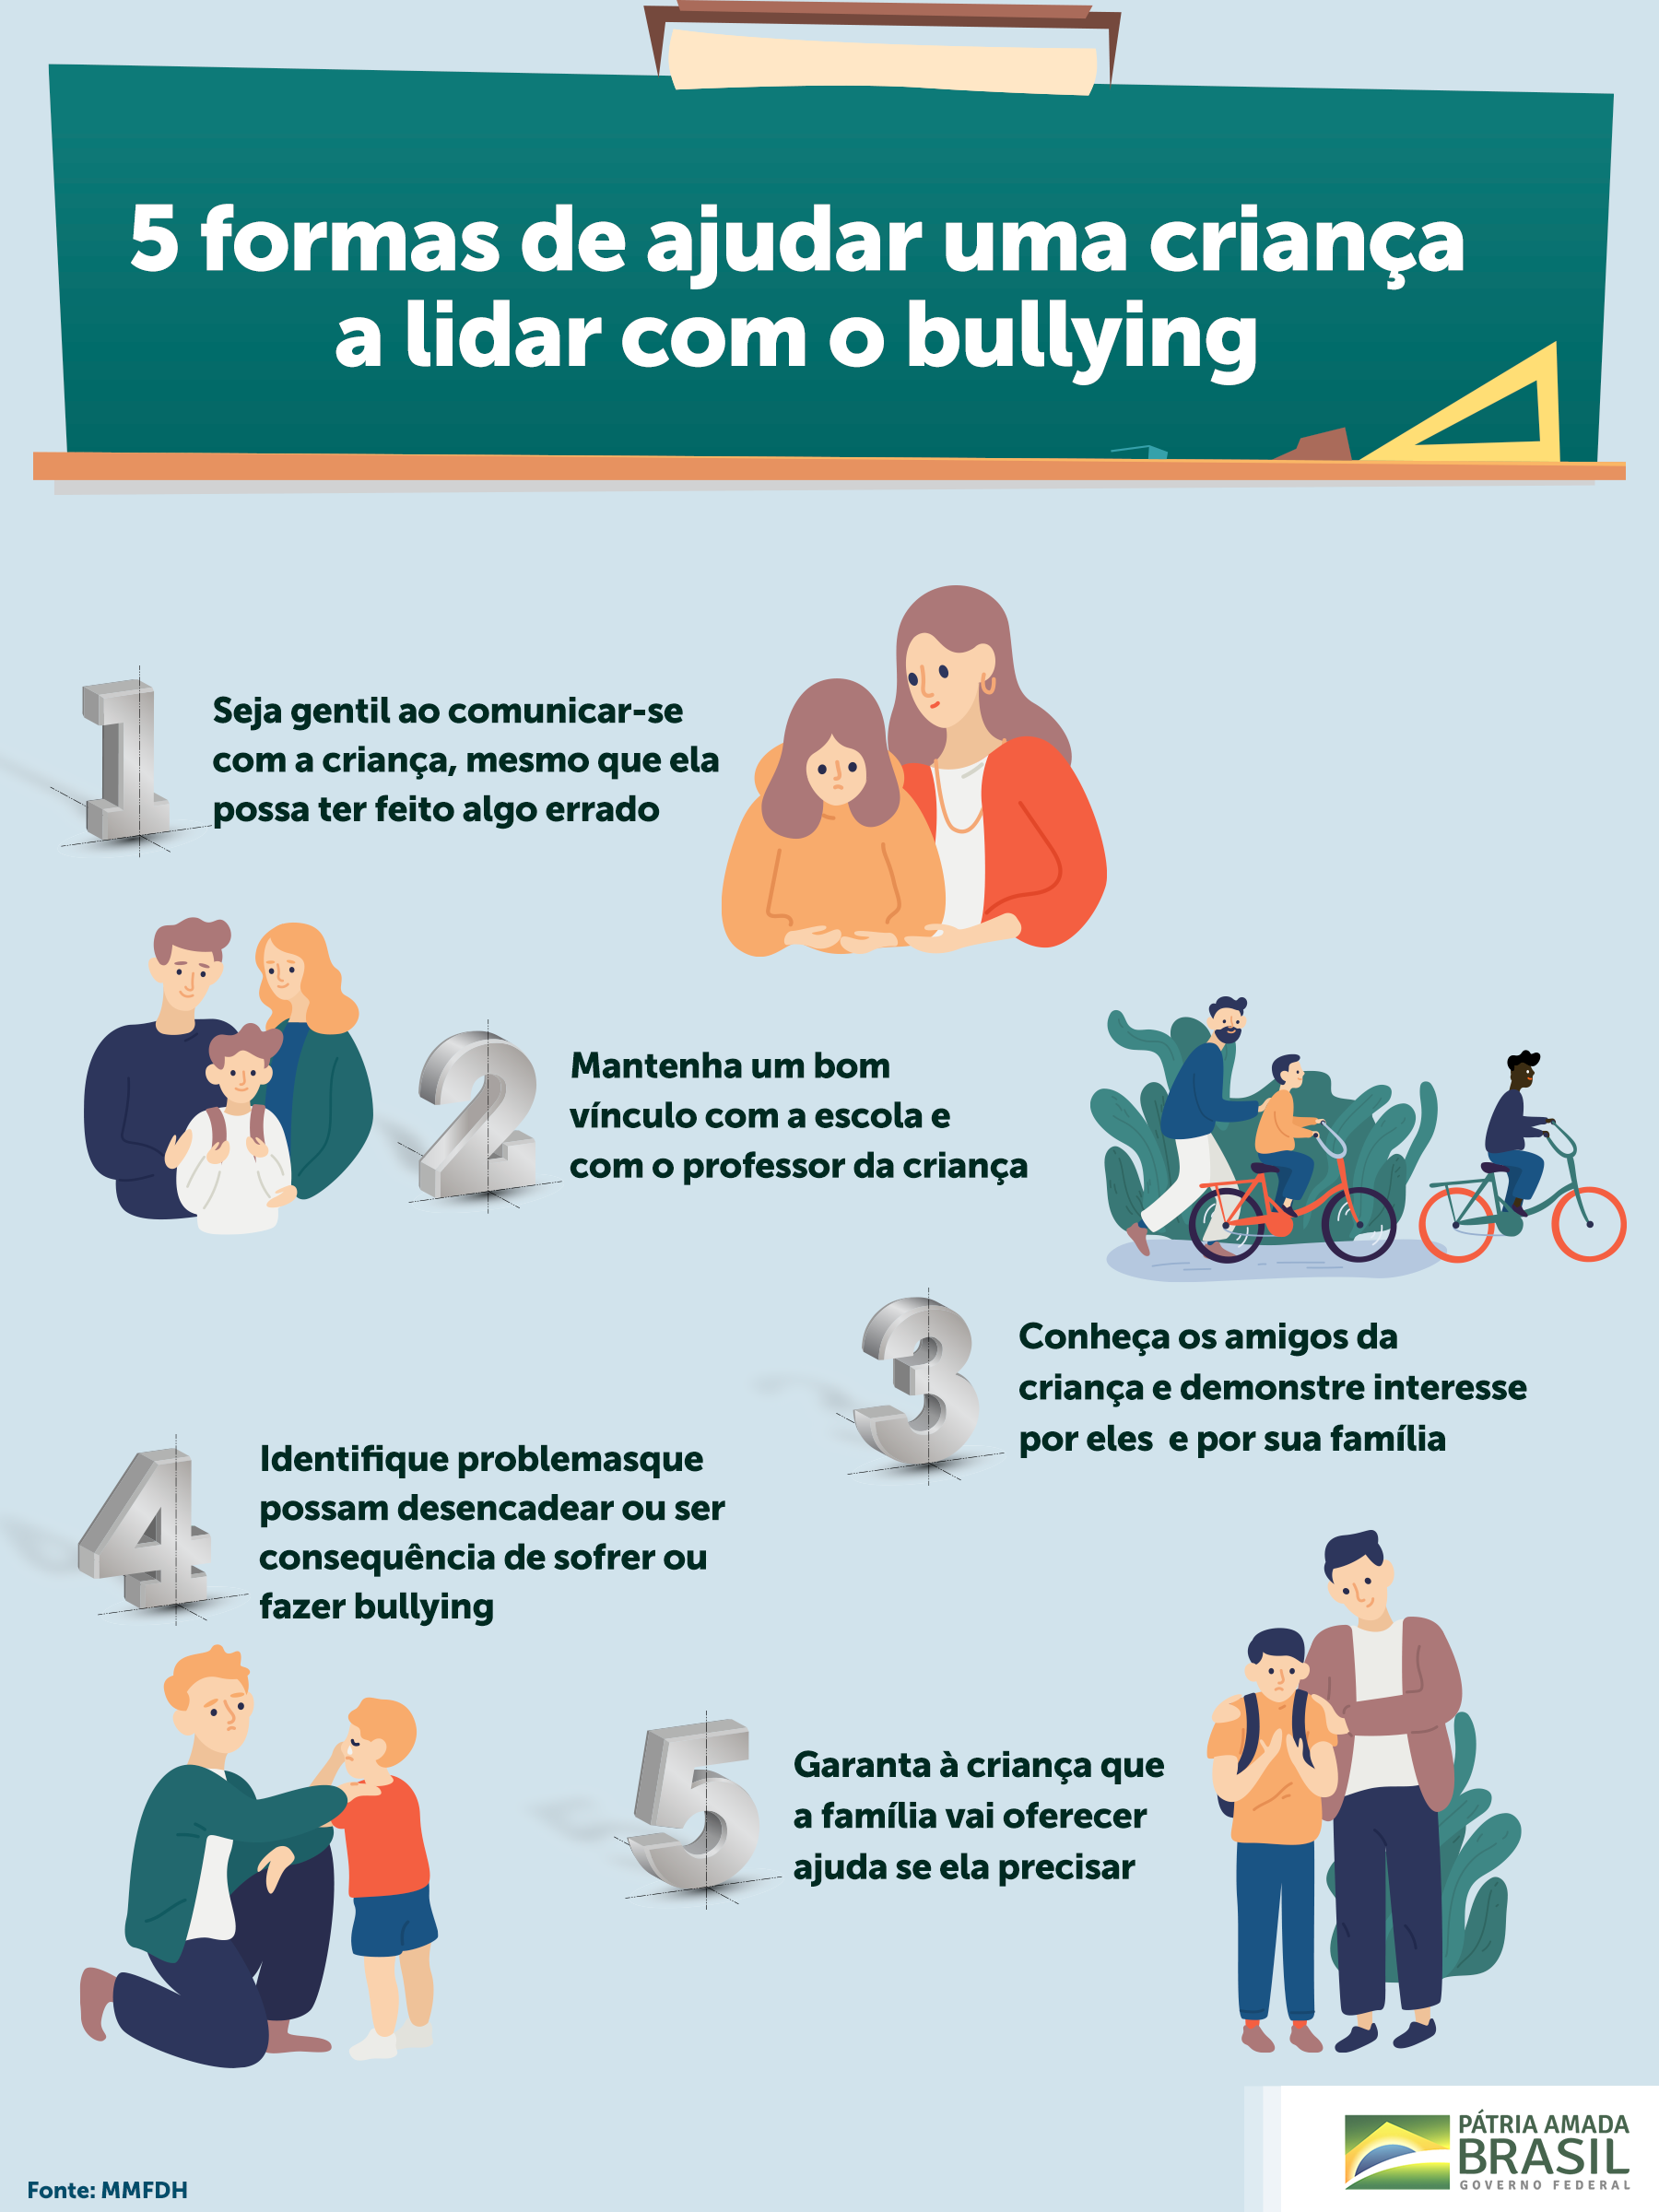 Bullying na escola: como identificar e prevenir